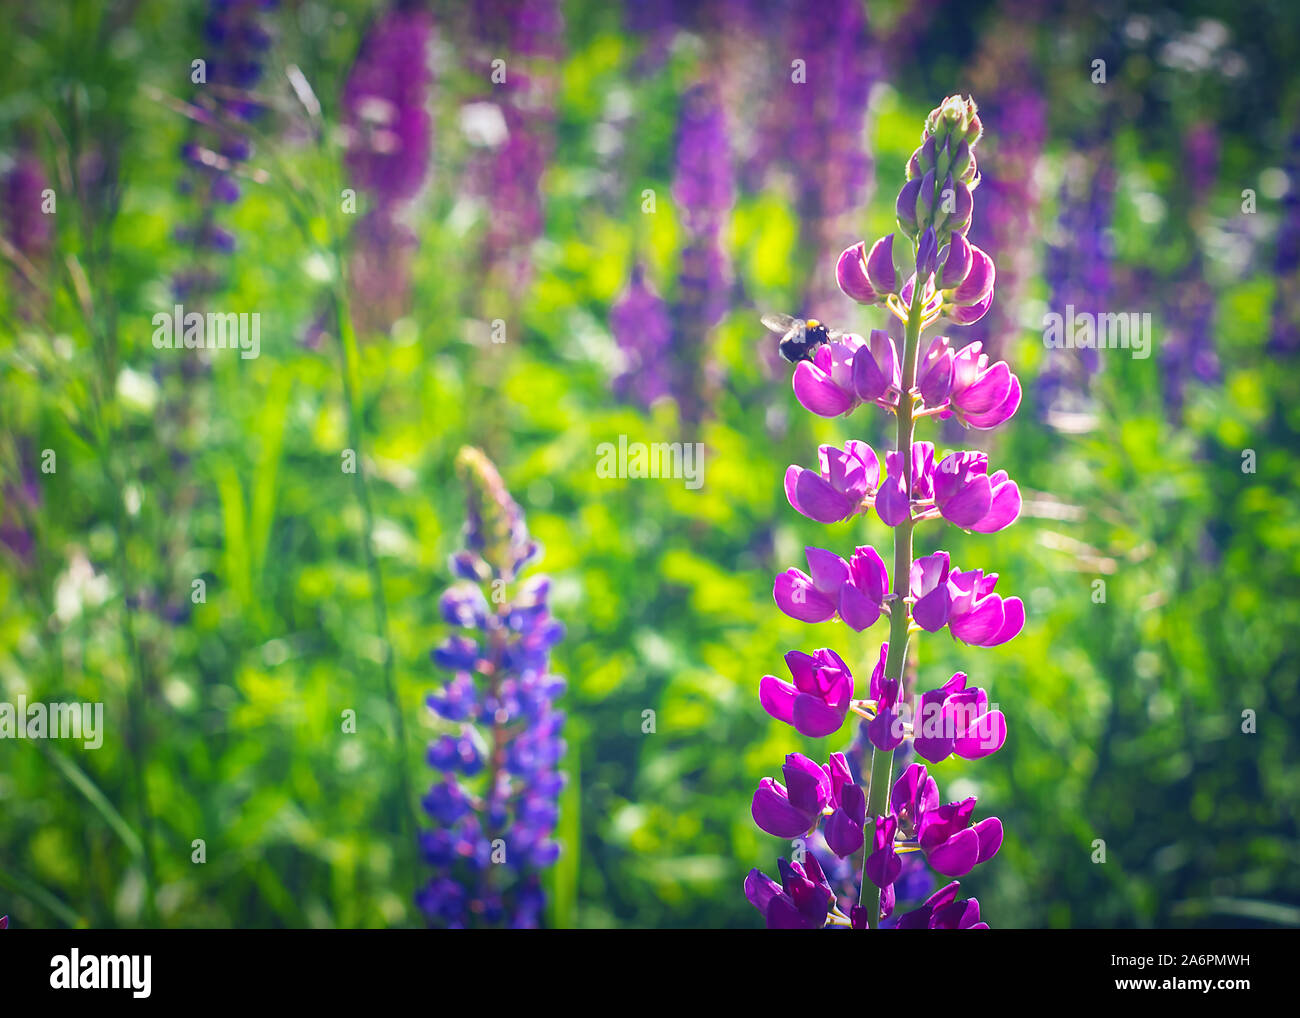 Bumblebee sur les fleurs violettes de l'Épilobe ou Willowherb, Chamaenerion angustifolium, sur une journée ensoleillée. Concept de la pollinisation. Banque D'Images